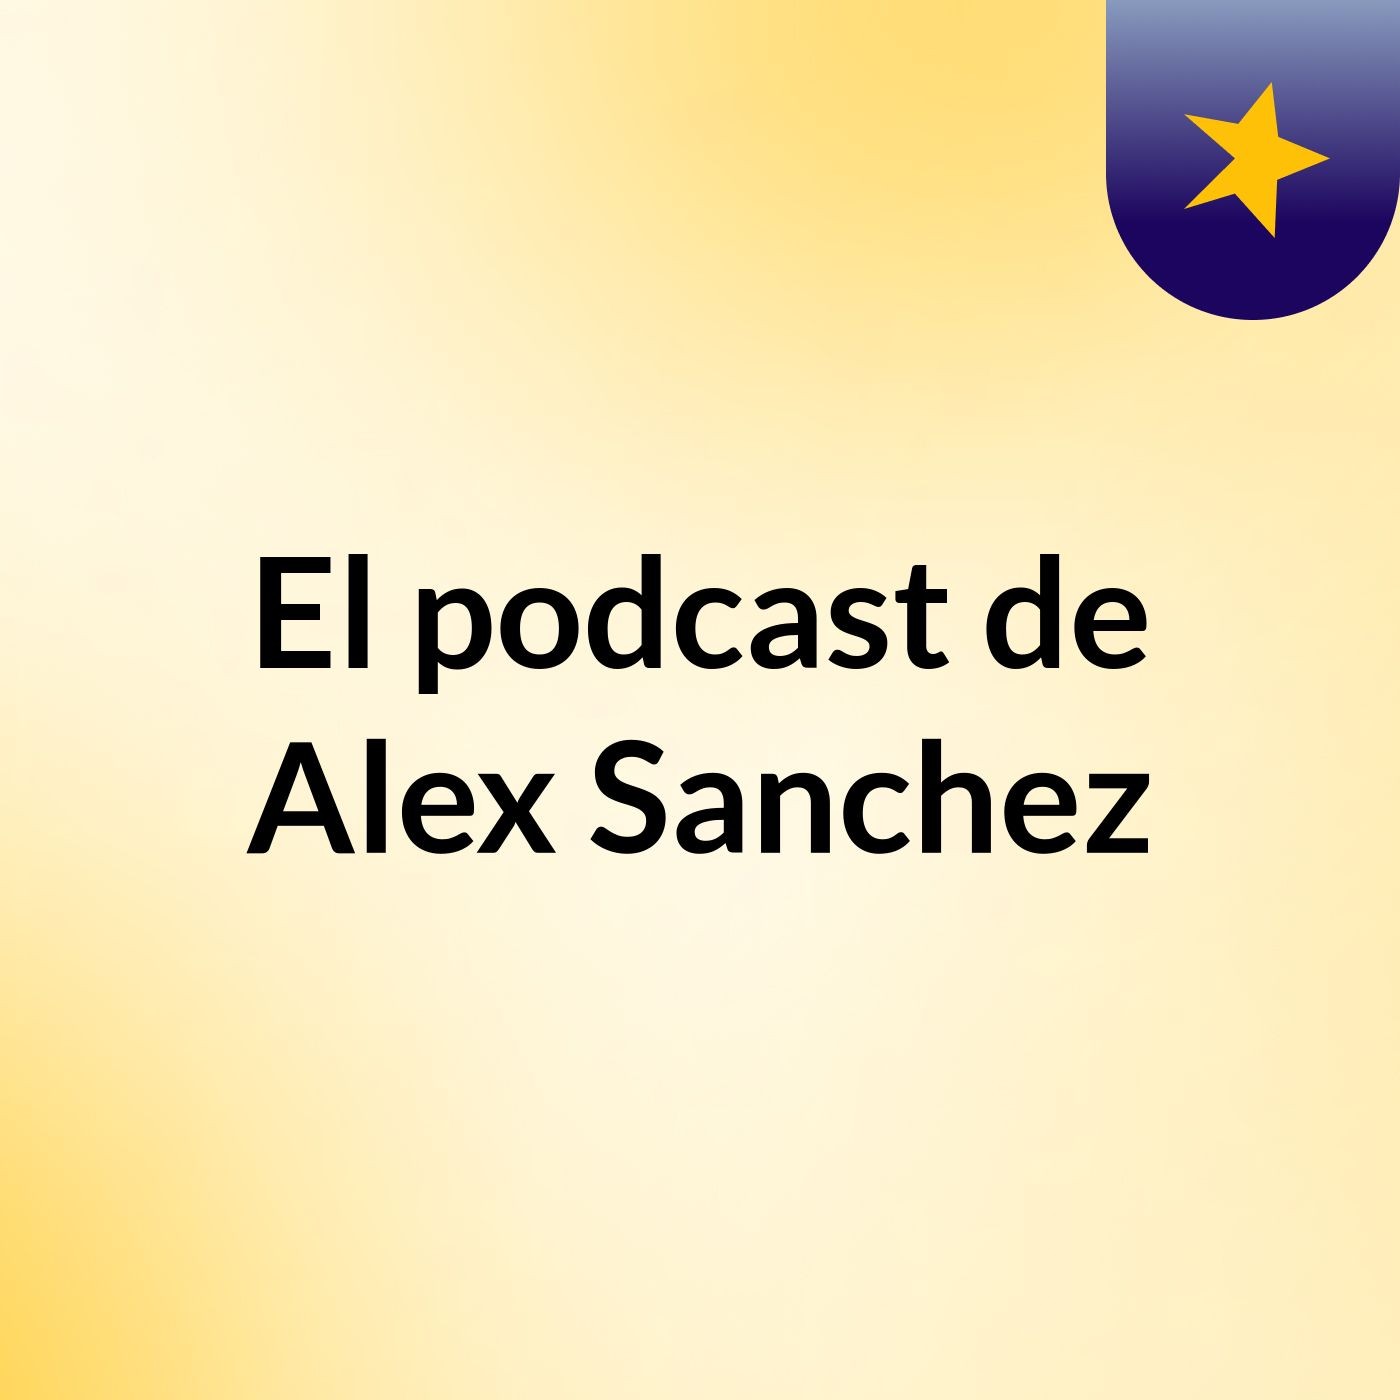 El podcast de Alex Sanchez